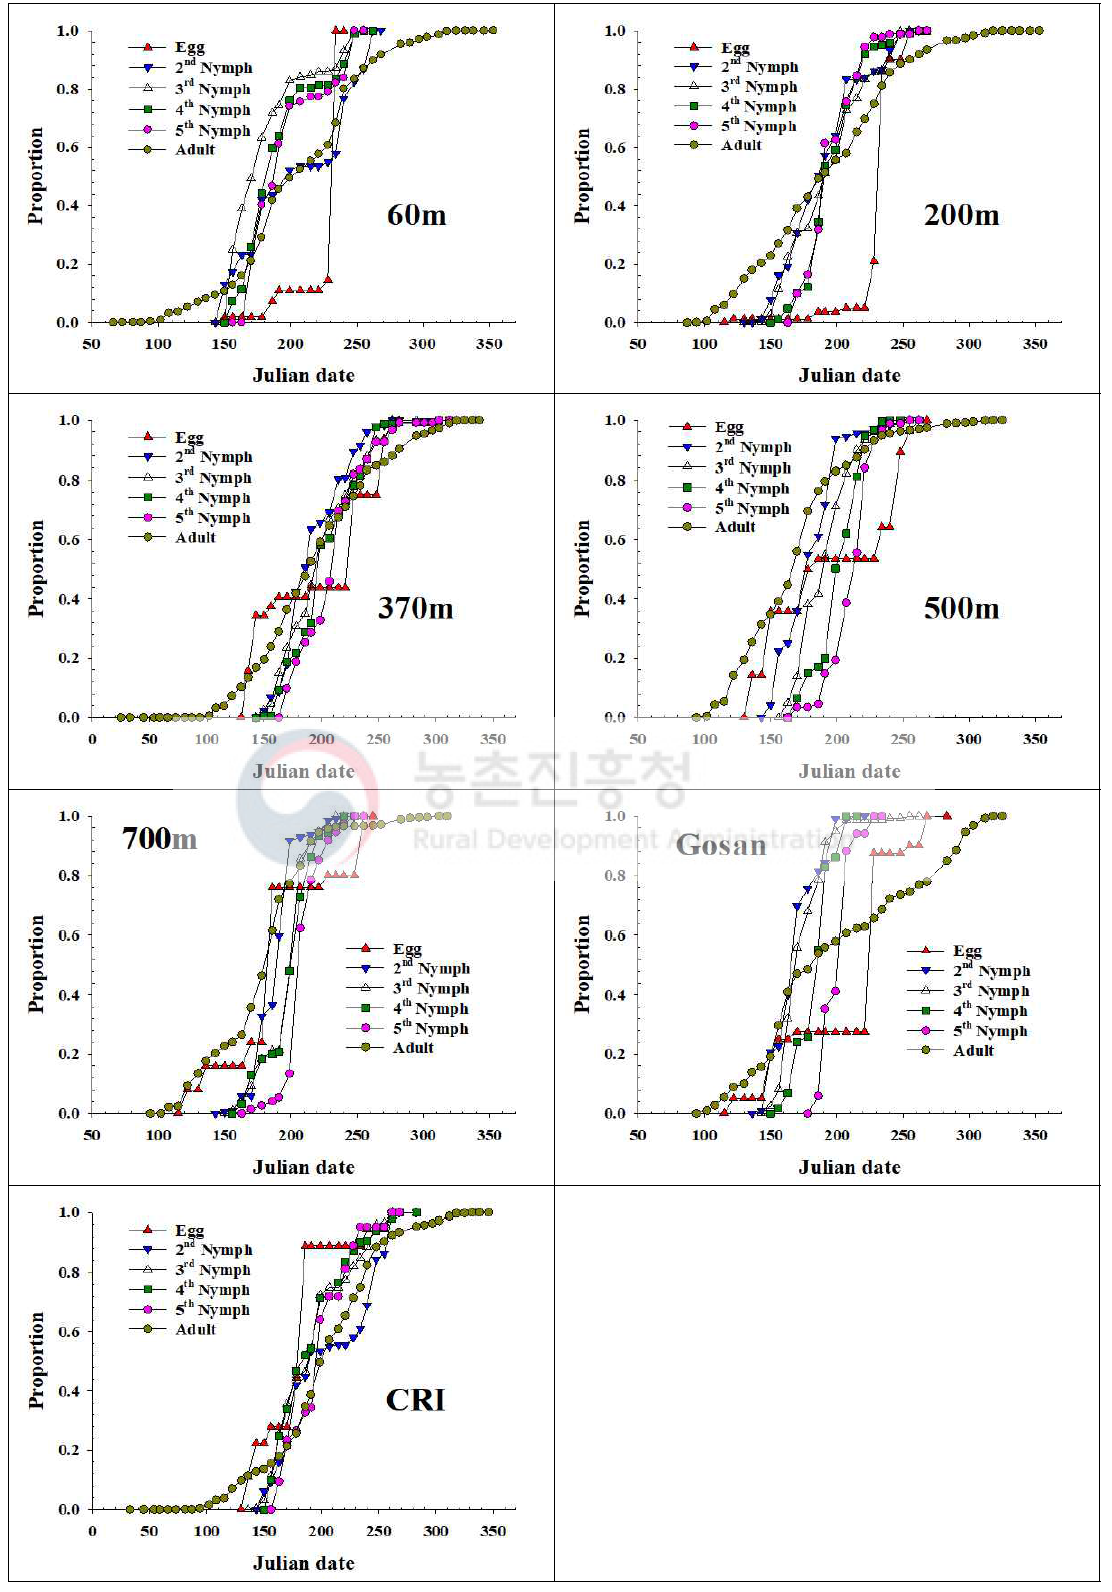 제주지역 톱다리개미허리노린재 발육단계별 개체수 누적증가 비교(2017)